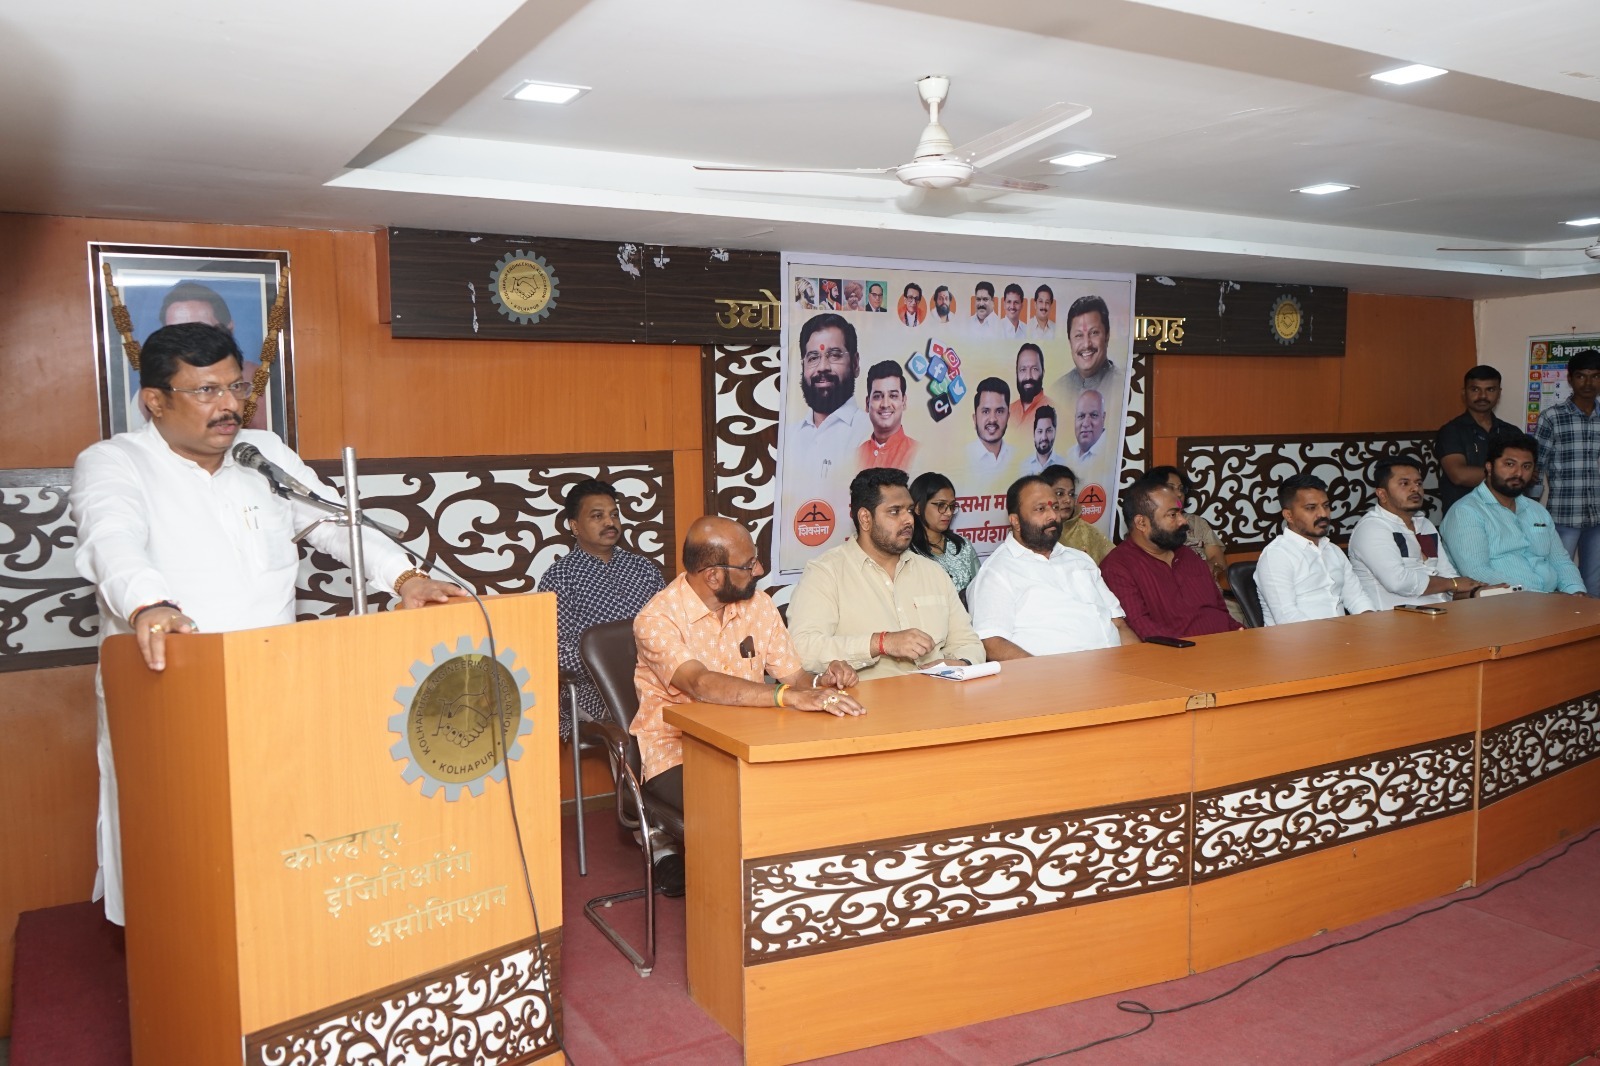 Shiv Sena social media worker workshop camp concluded